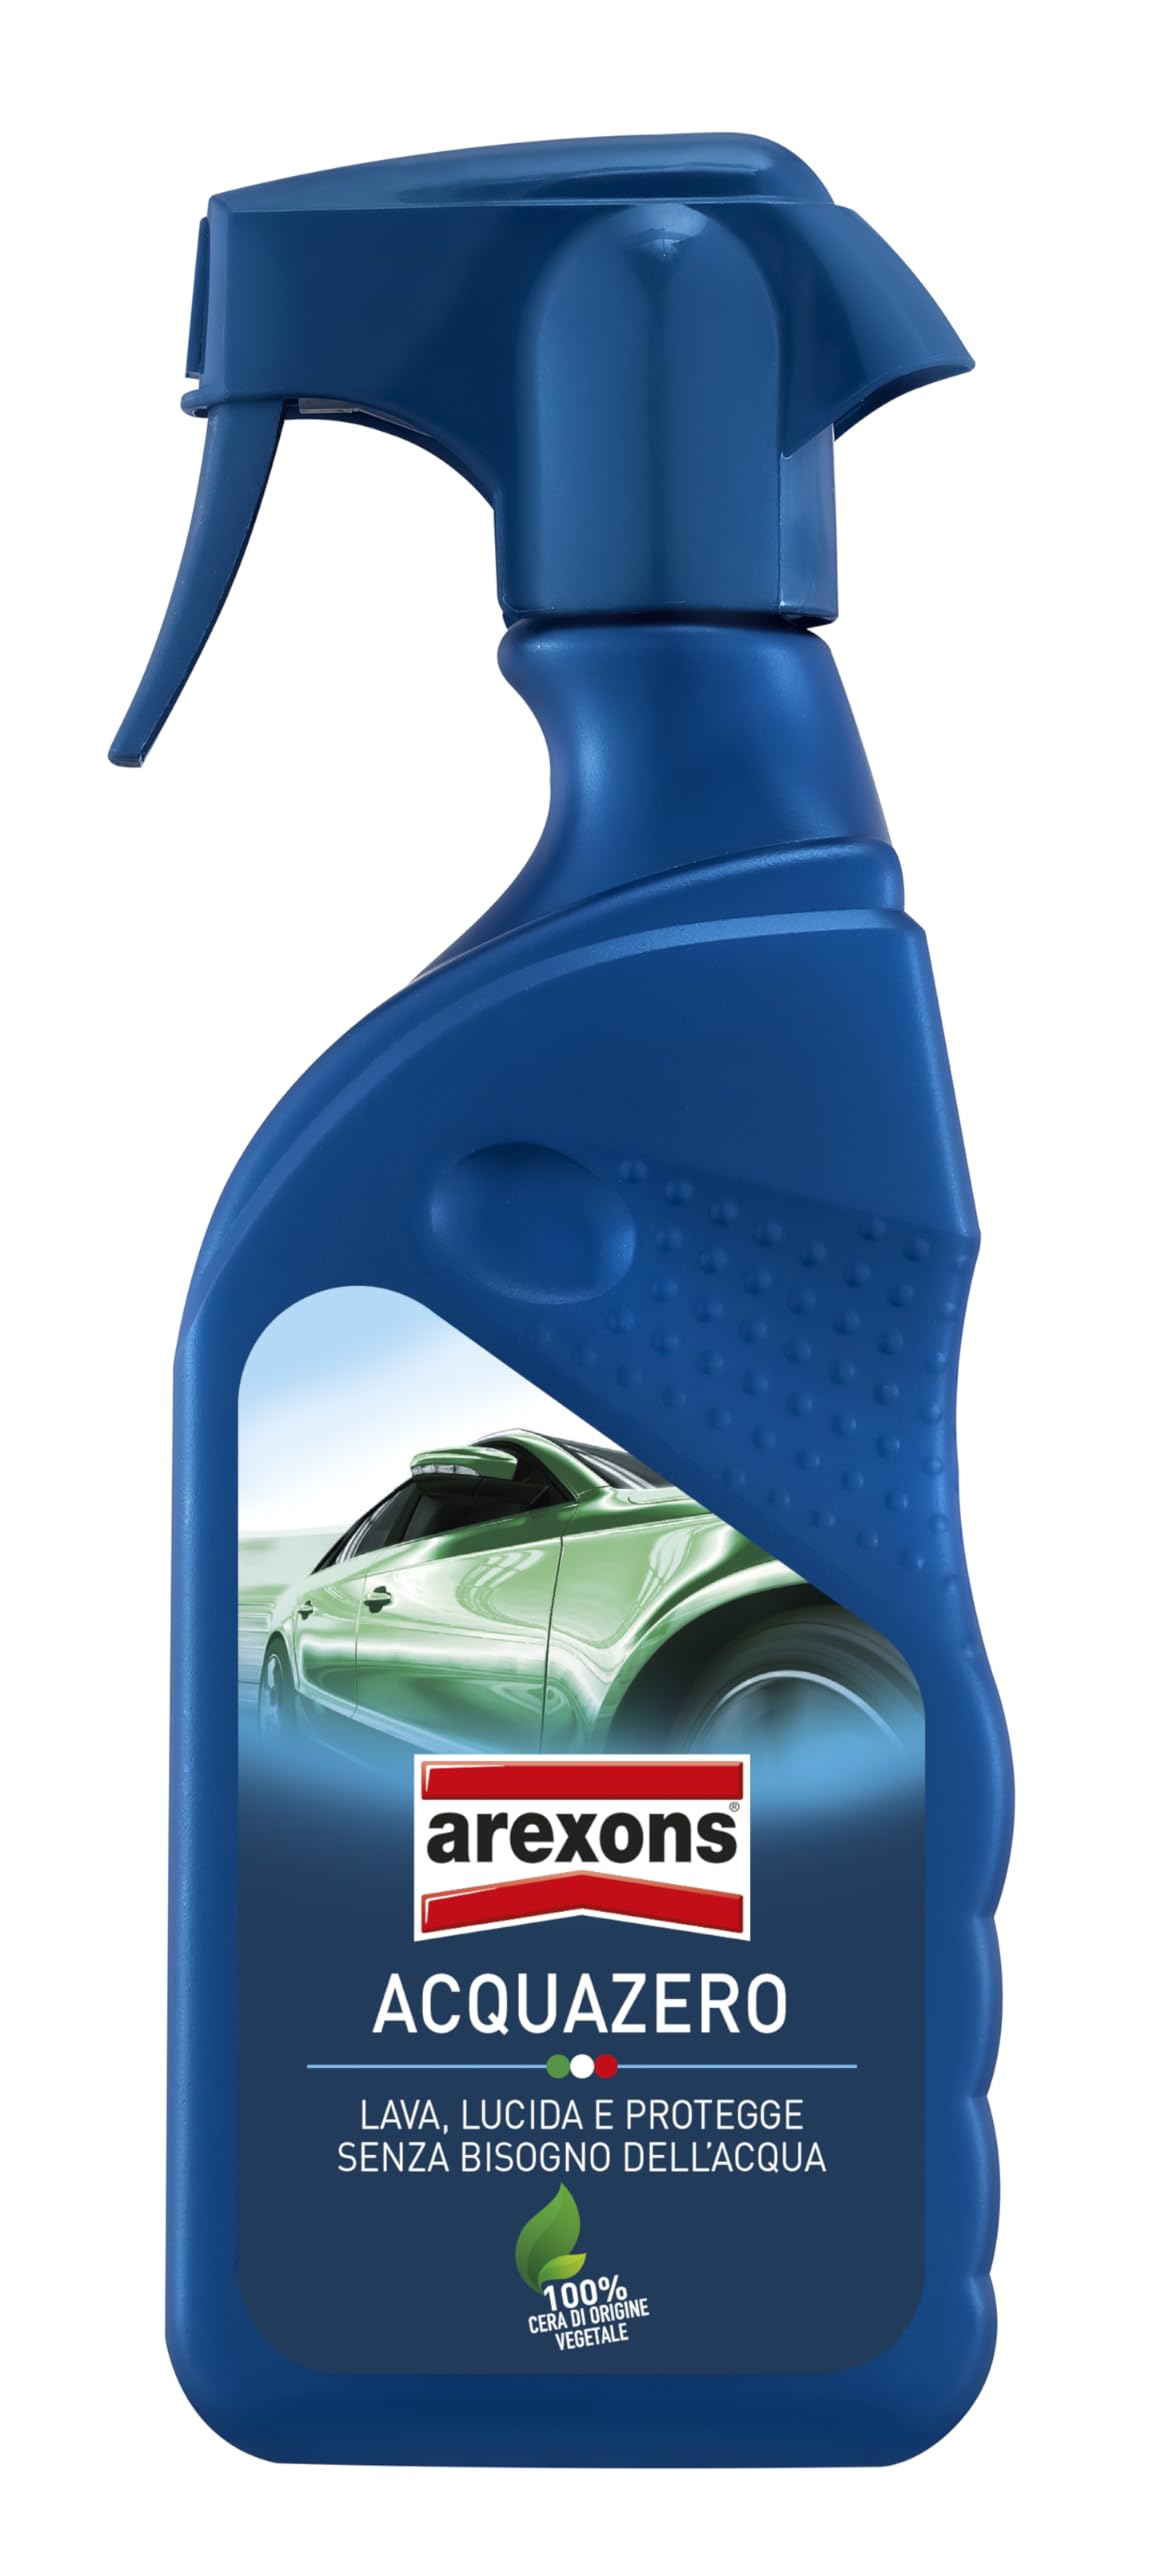 AREXONS 1044147 Aquazero, Reinigung und Politur fürs Auto, ohne Wasser, 400 ml Single von Arexons